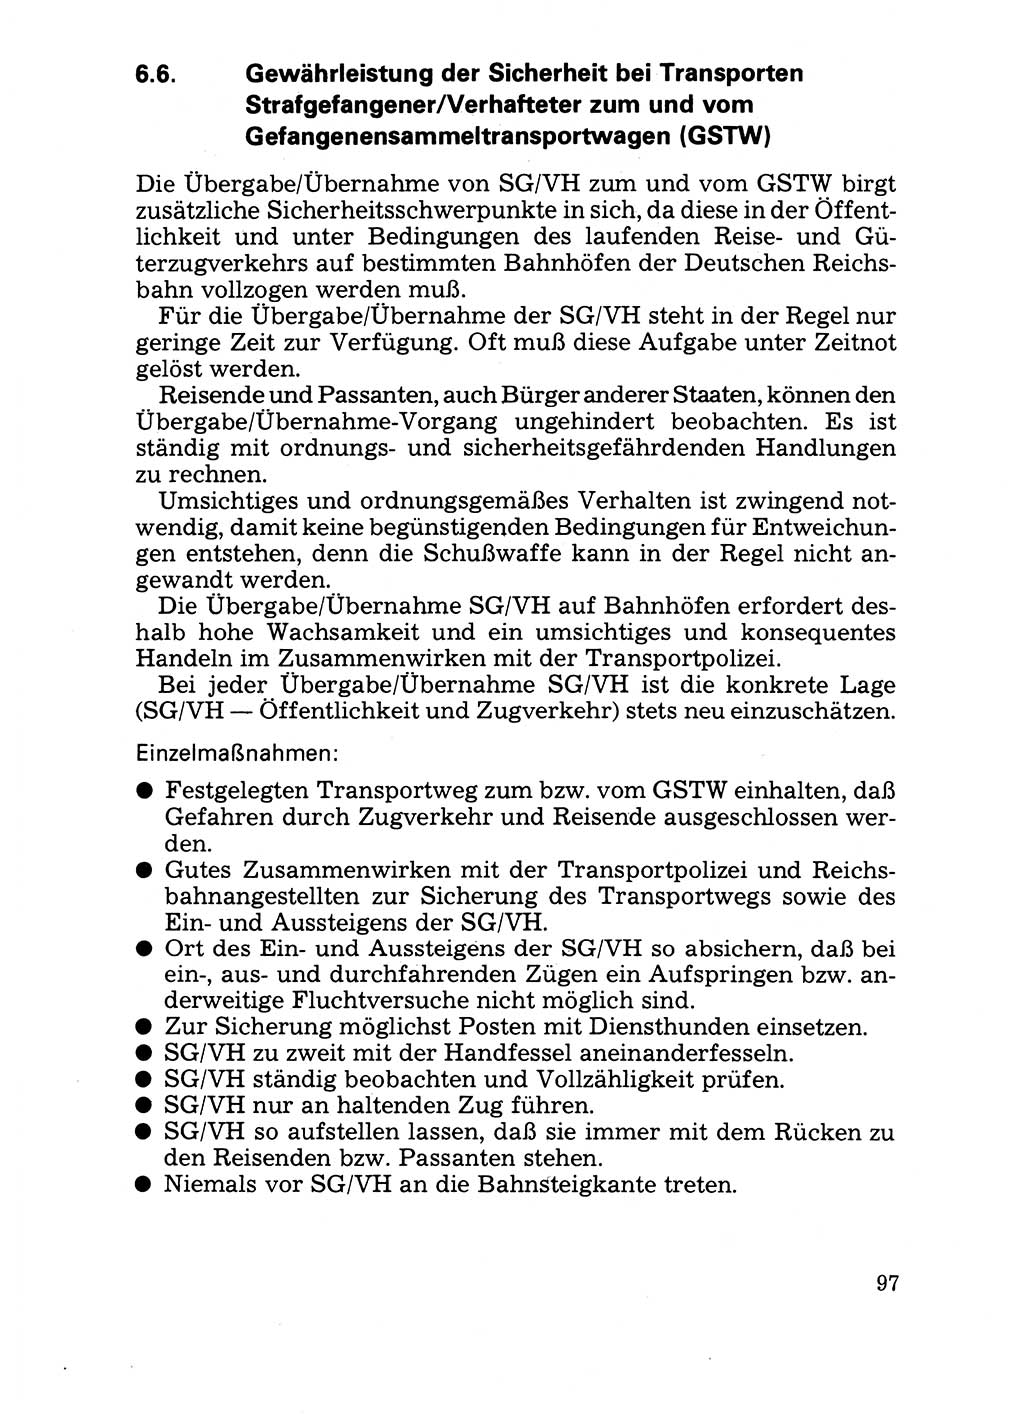 Handbuch für operative Dienste, Abteilung Strafvollzug (SV) [Ministerium des Innern (MdI) Deutsche Demokratische Republik (DDR)] 1981, Seite 97 (Hb. op. D. Abt. SV MdI DDR 1981, S. 97)